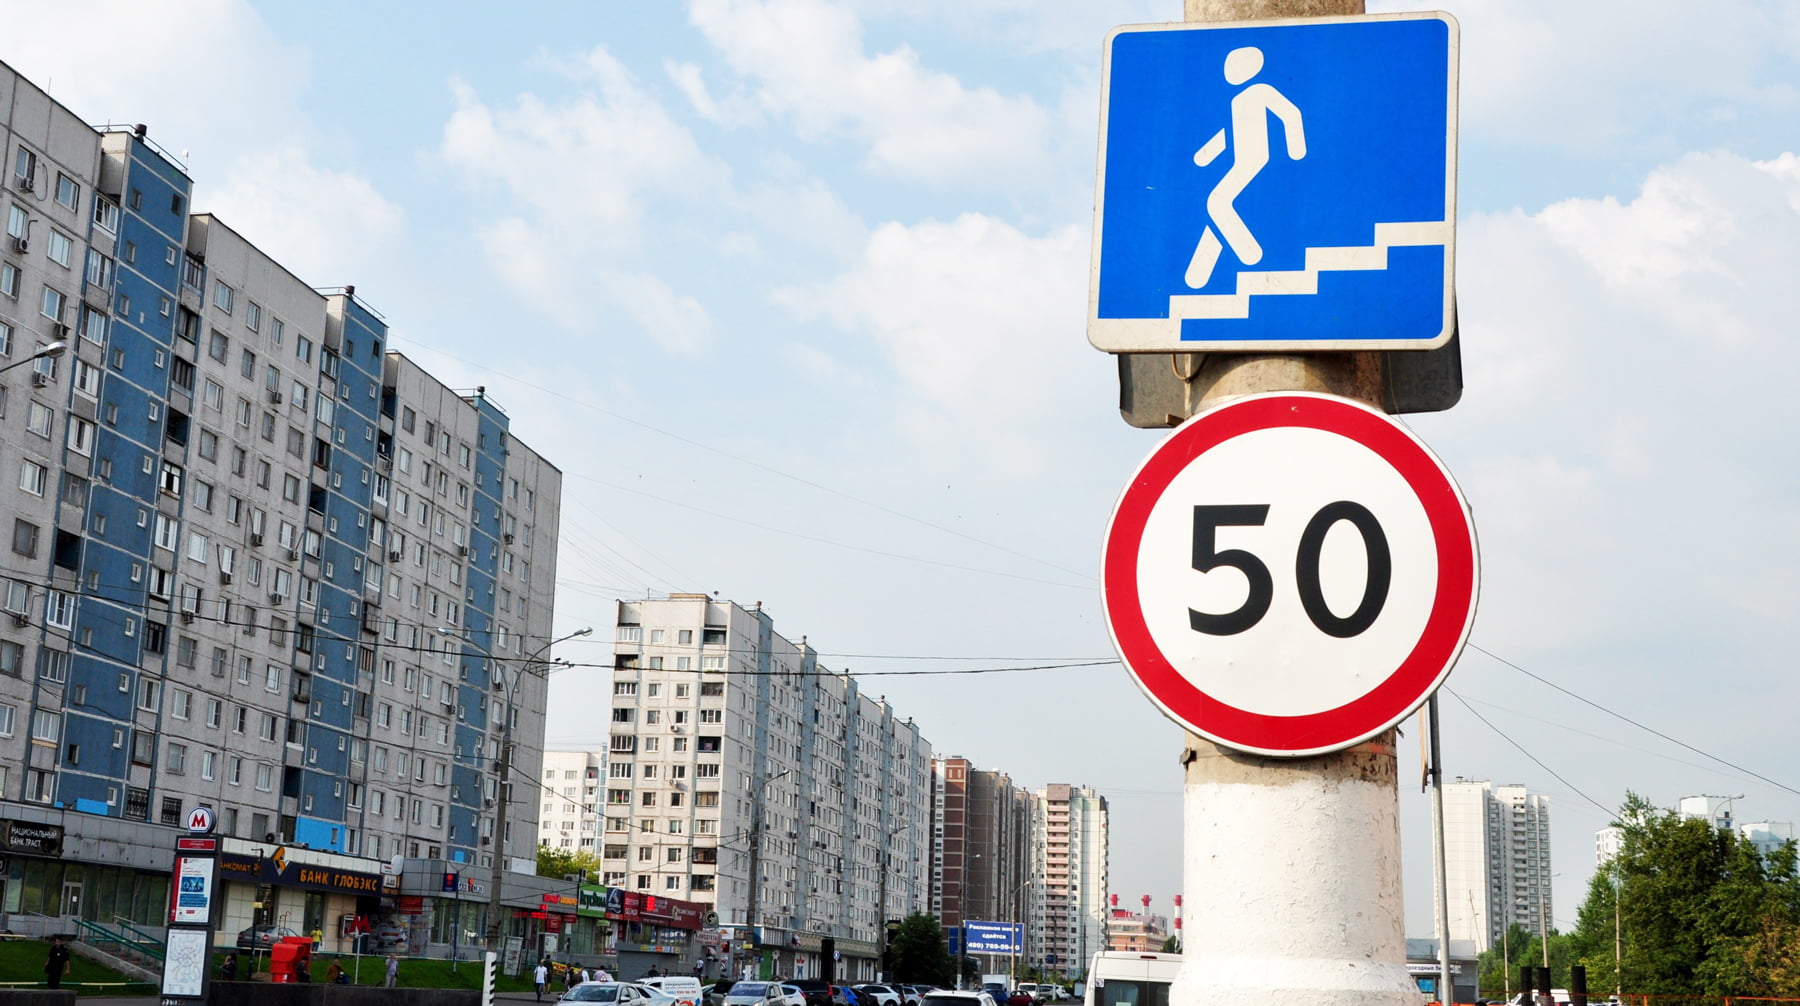 Сегодня де-юре любой водитель в России может без последствий превышать скорость на 20 километров в час Фото: © Агентство Москва